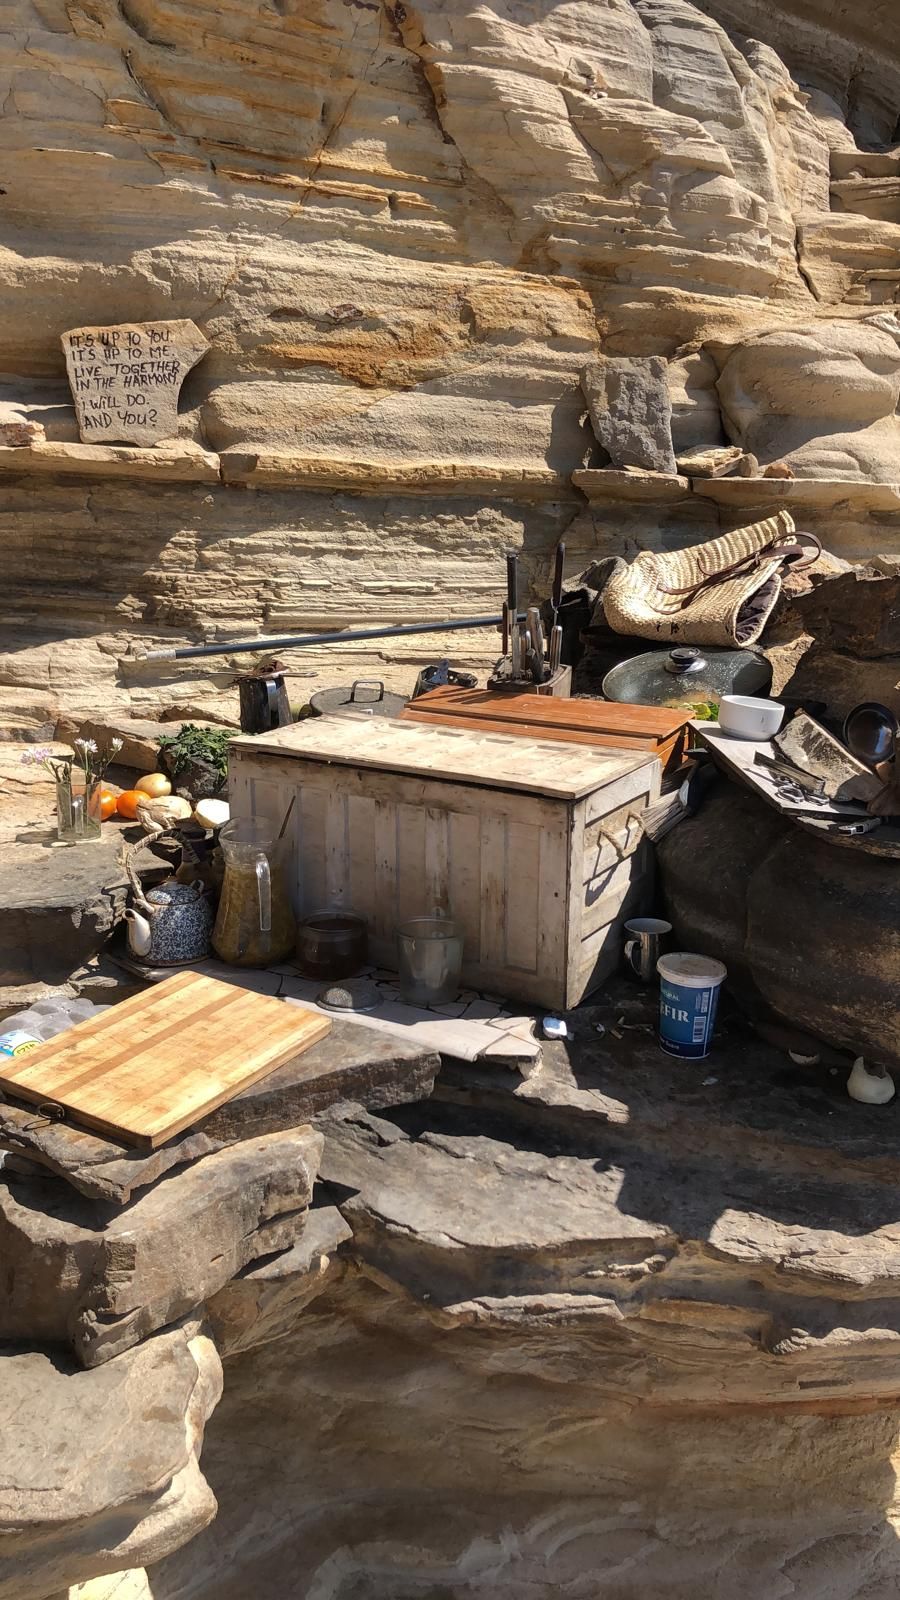 Sant Antoni retira 360 kilos de residuos de Punta Galera donde habitaba una persona